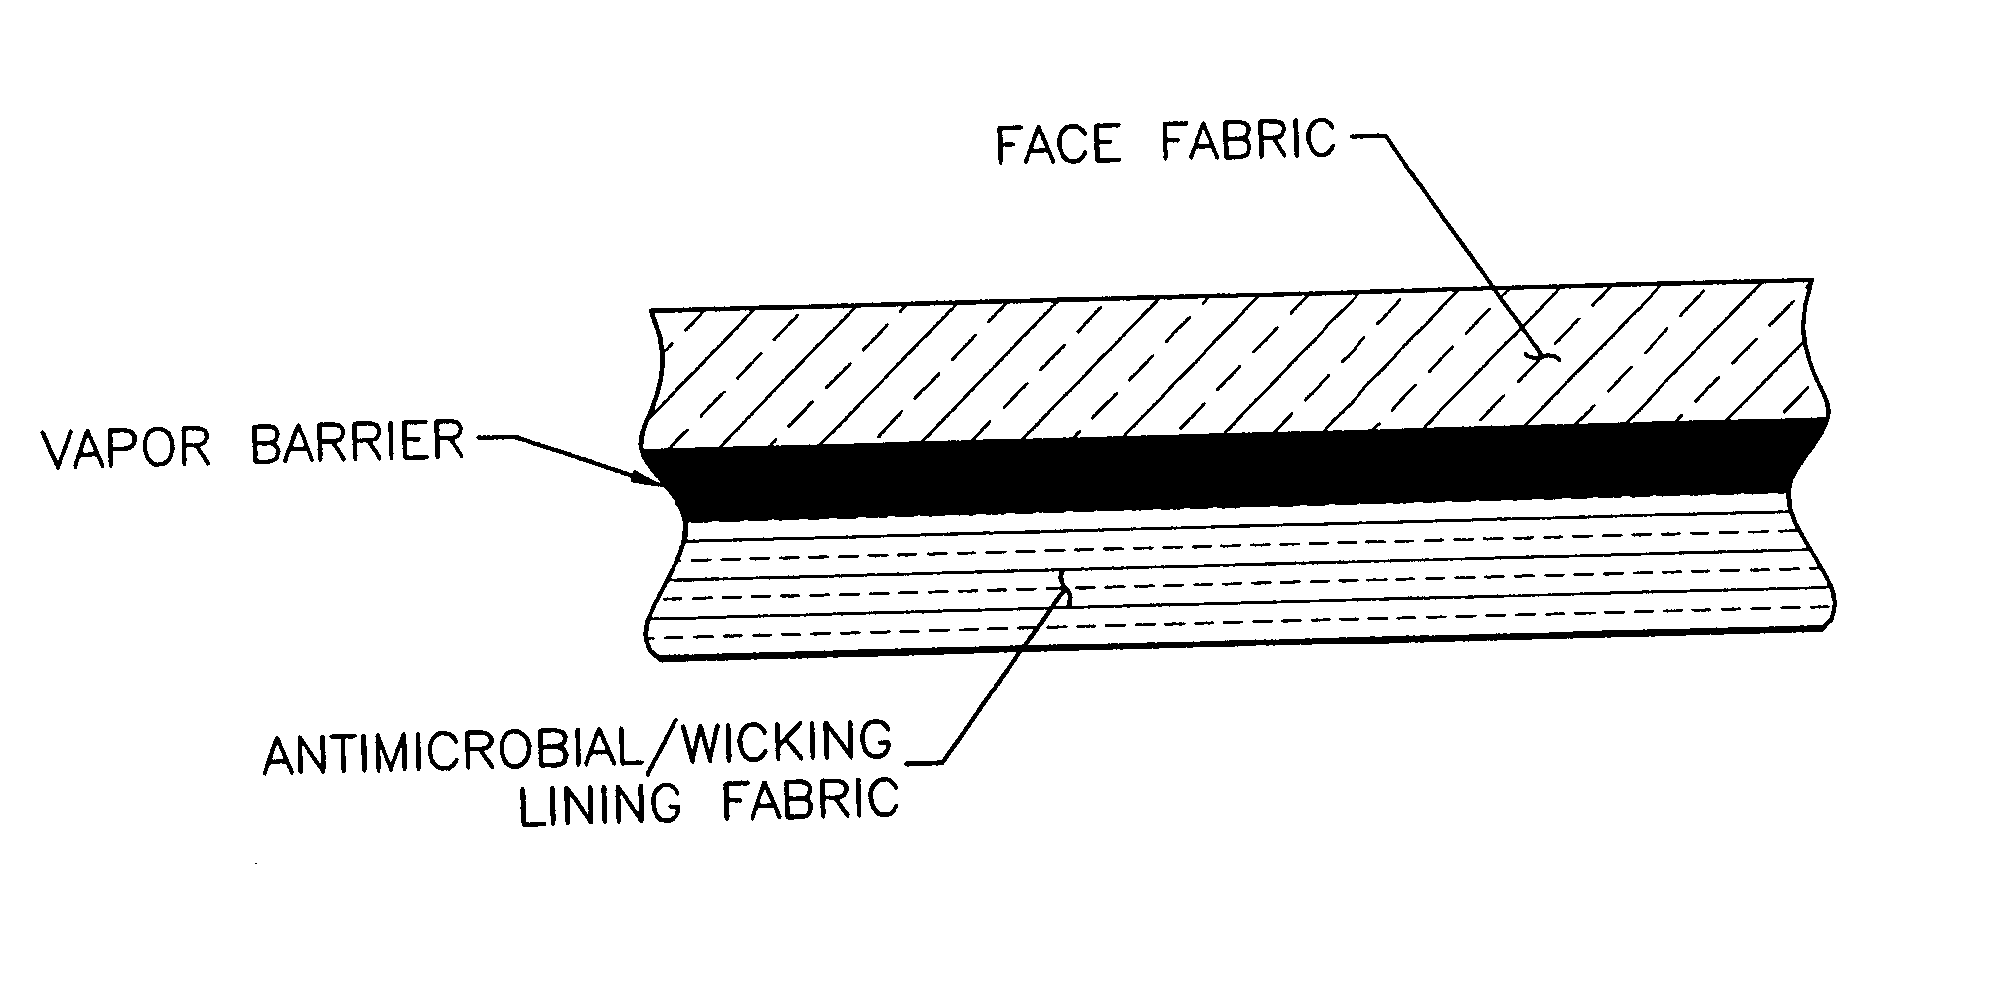 Multifunctional composite vapor barrier textile